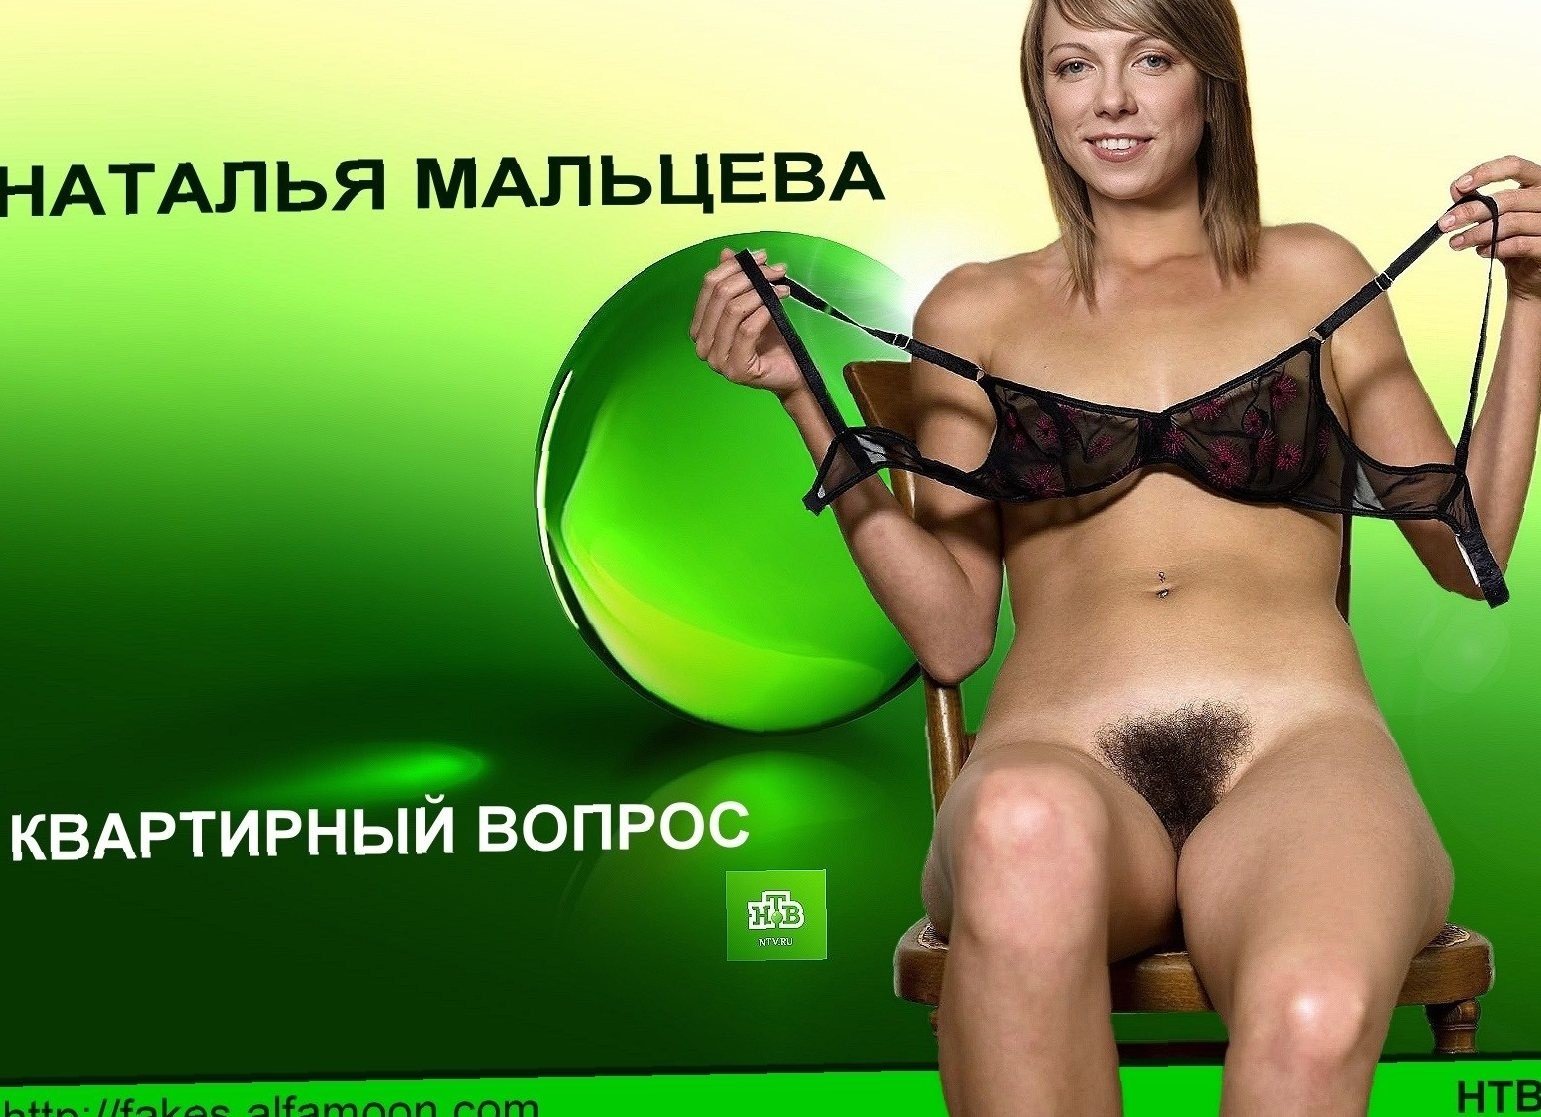 Русские эротические телеканалы (59 фото) - секс и порно